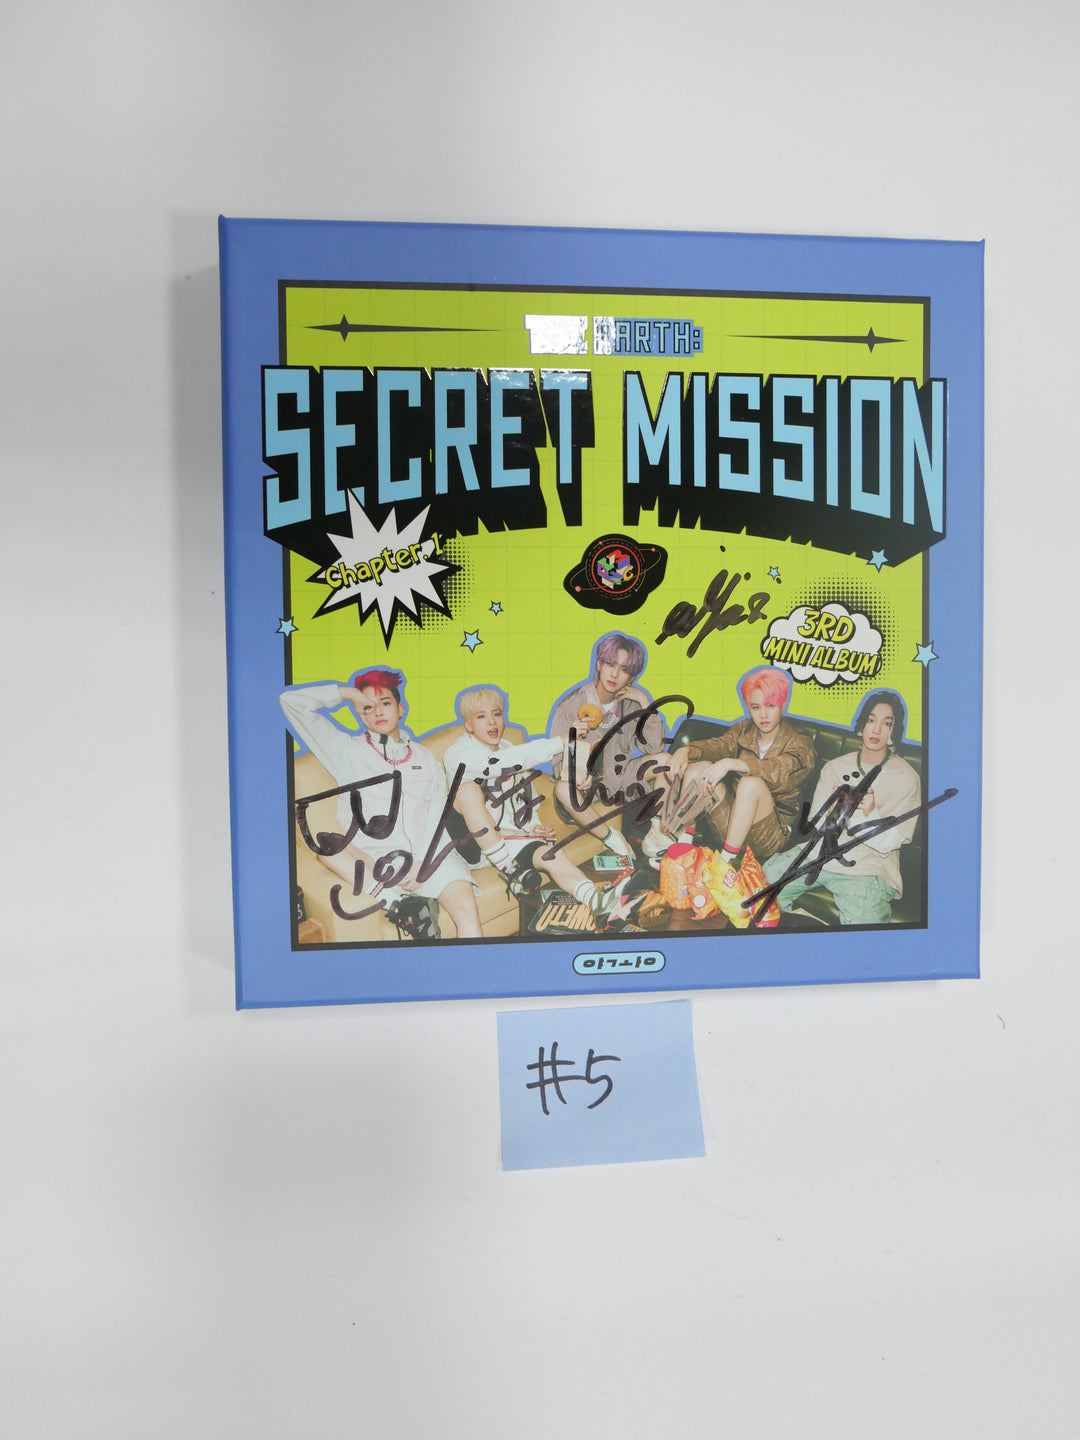 MCND "Secret Mission" 3rd mini - Hand Autographed(Signed) Promo Album